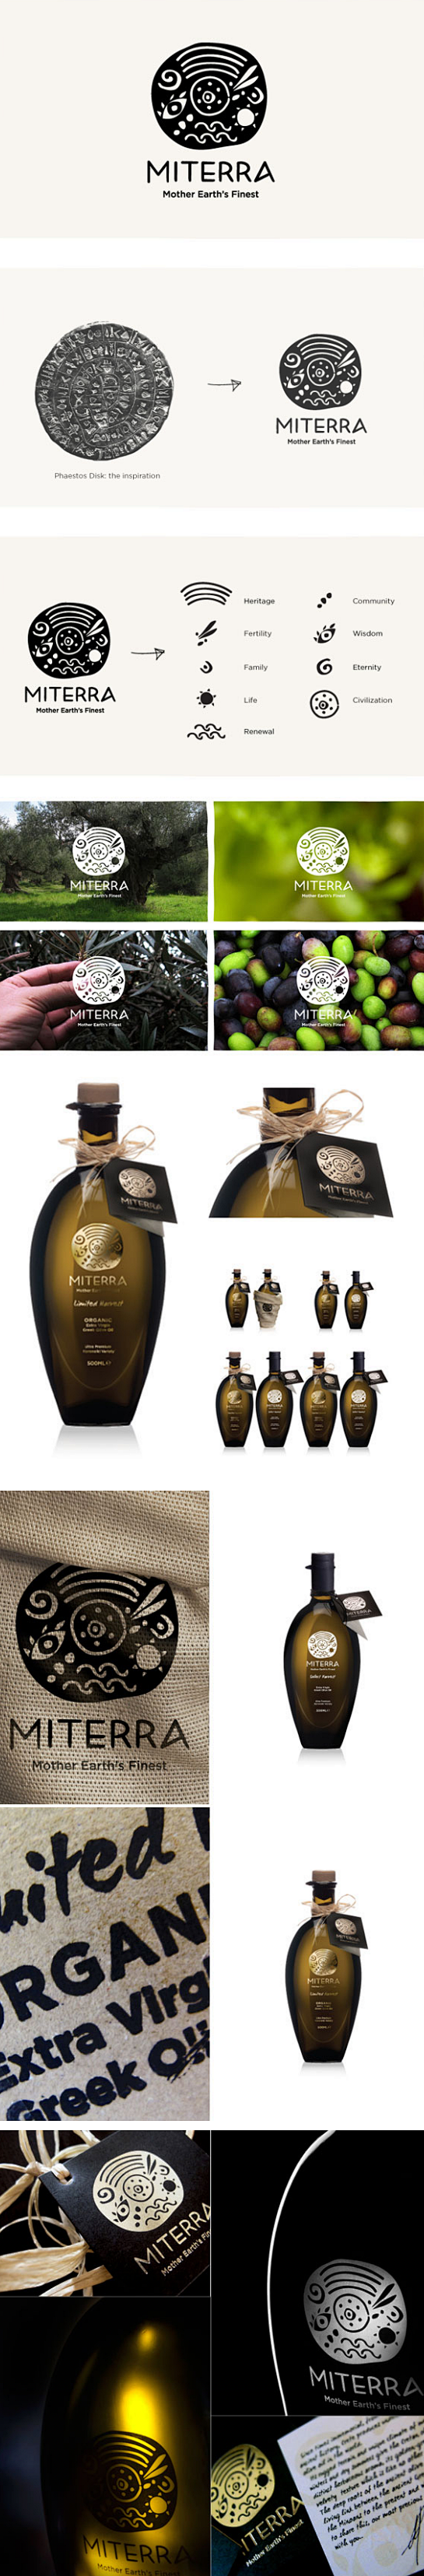 MITERRA希腊橄榄油 #品牌设计#